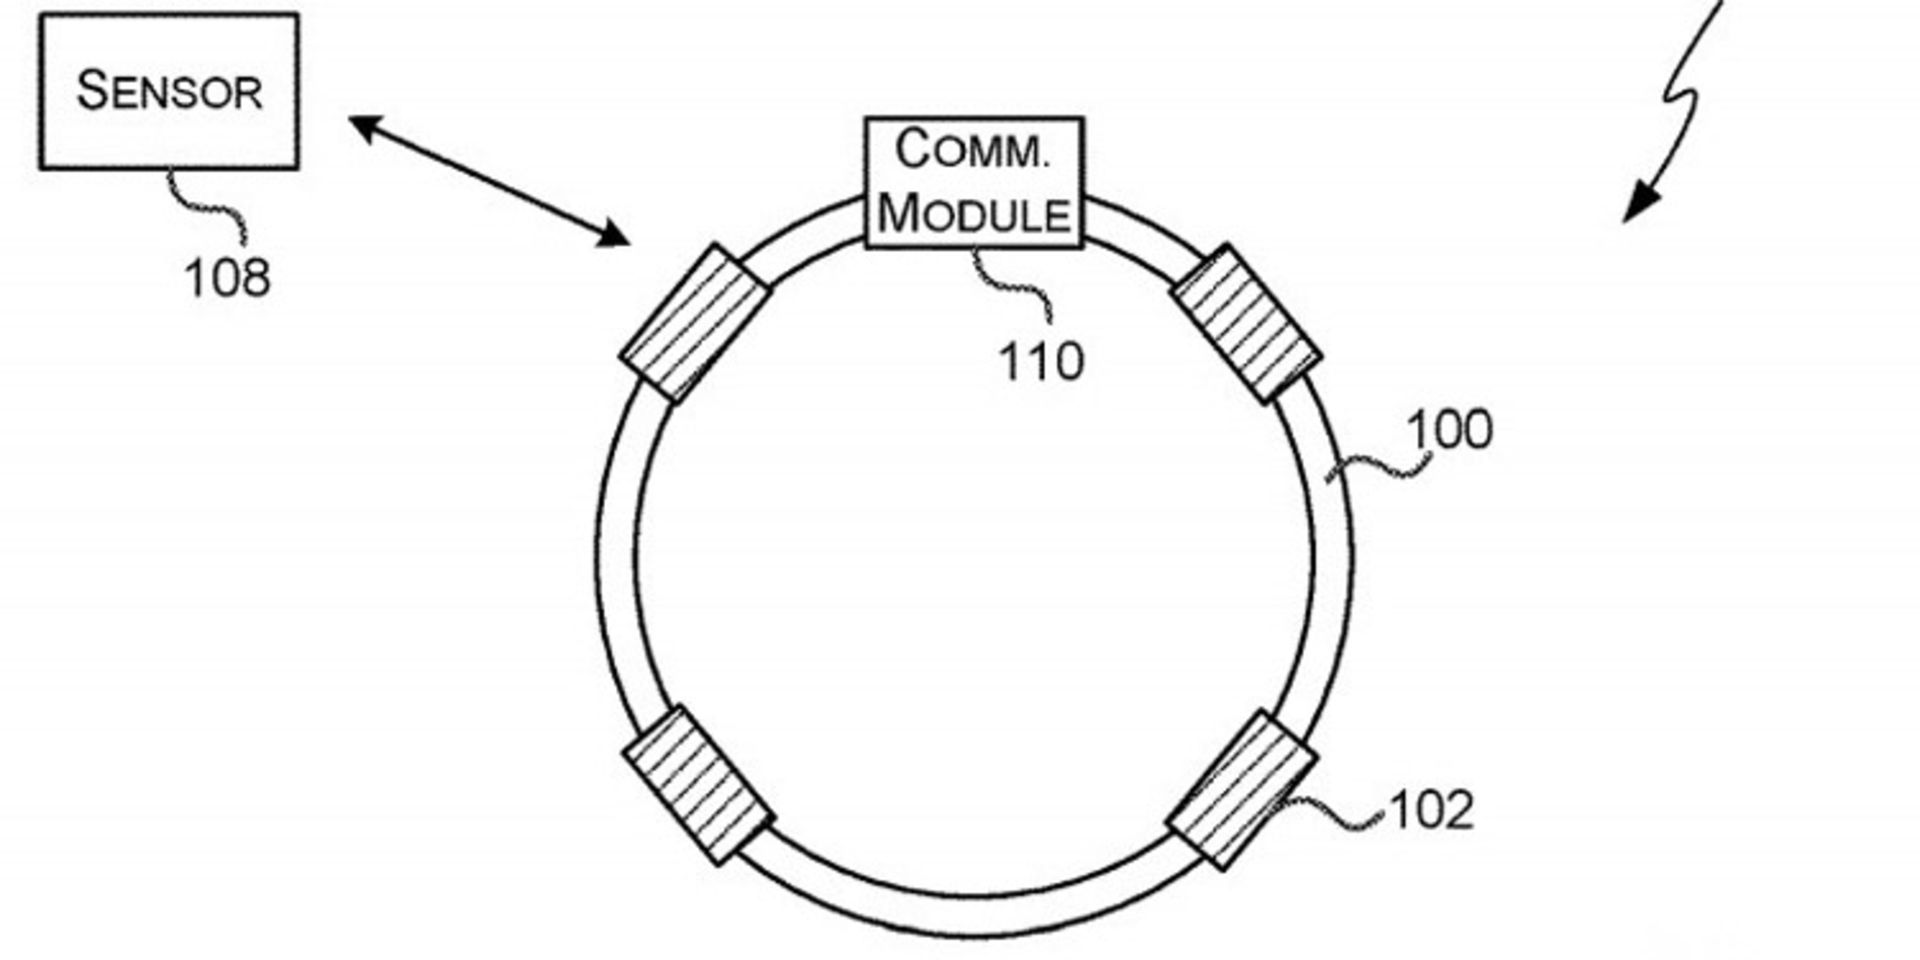 پتنت دستگاه پوشیدنی مایکروسافت / Microsoft's Wearable Device Patent